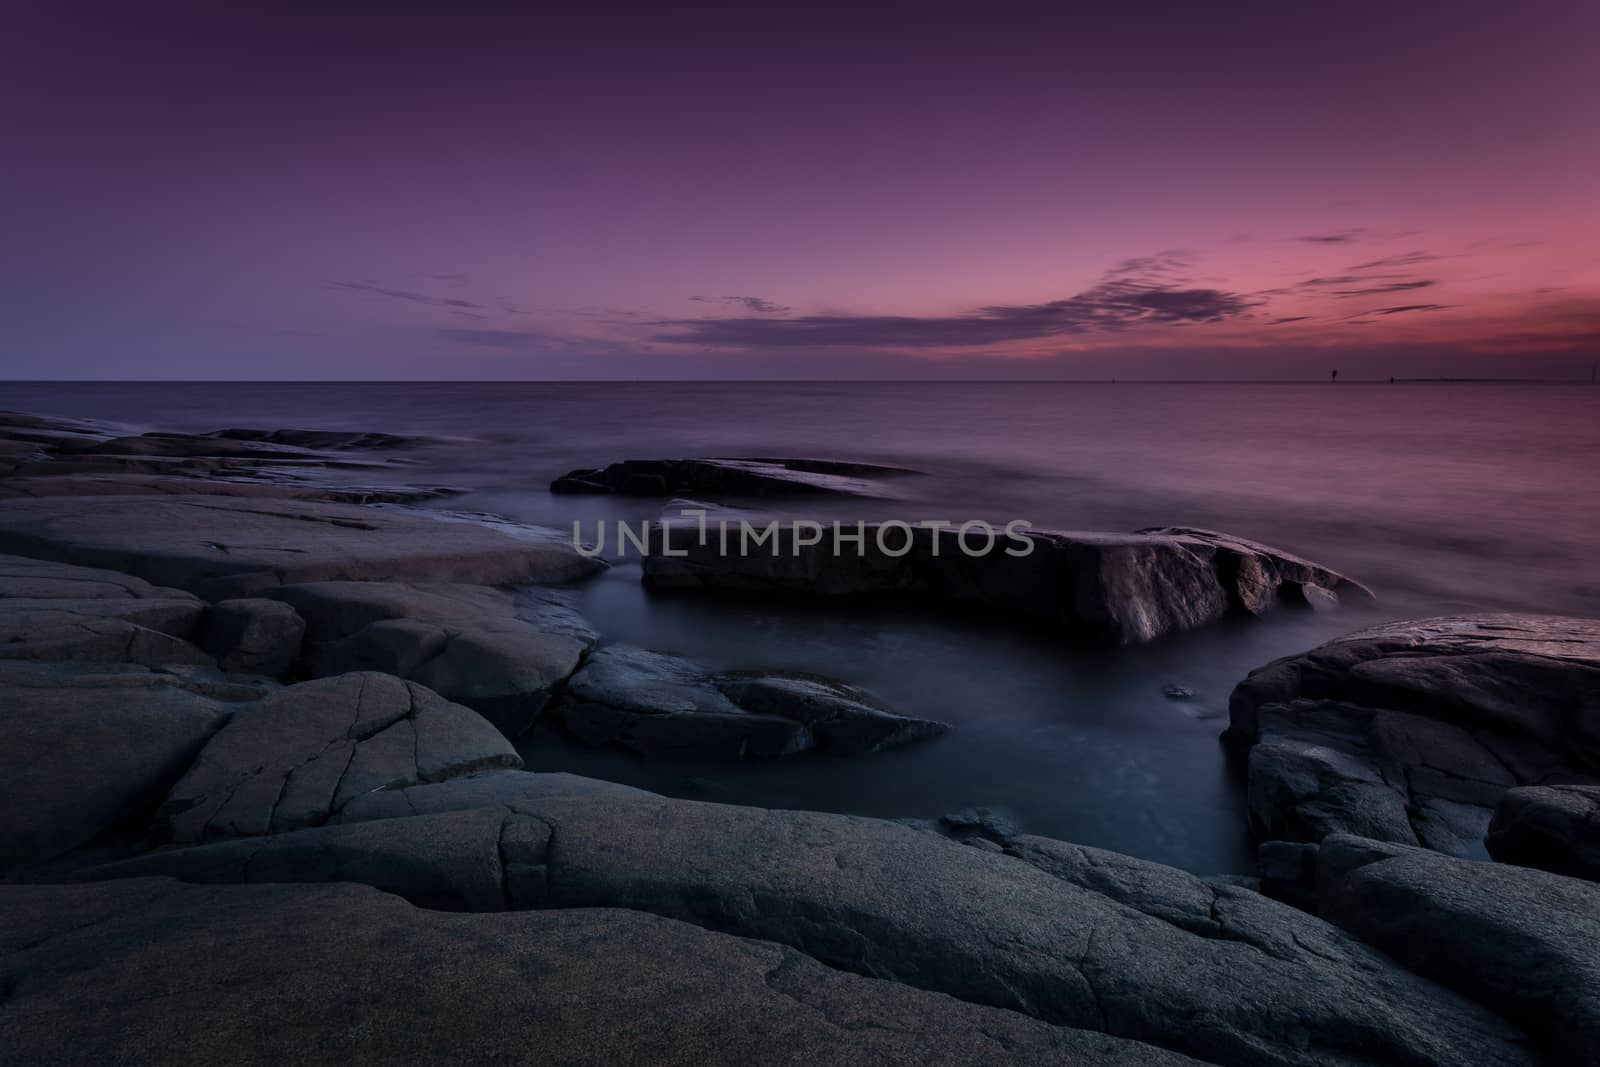 Purple seascape in Pori, Finland by leorantala